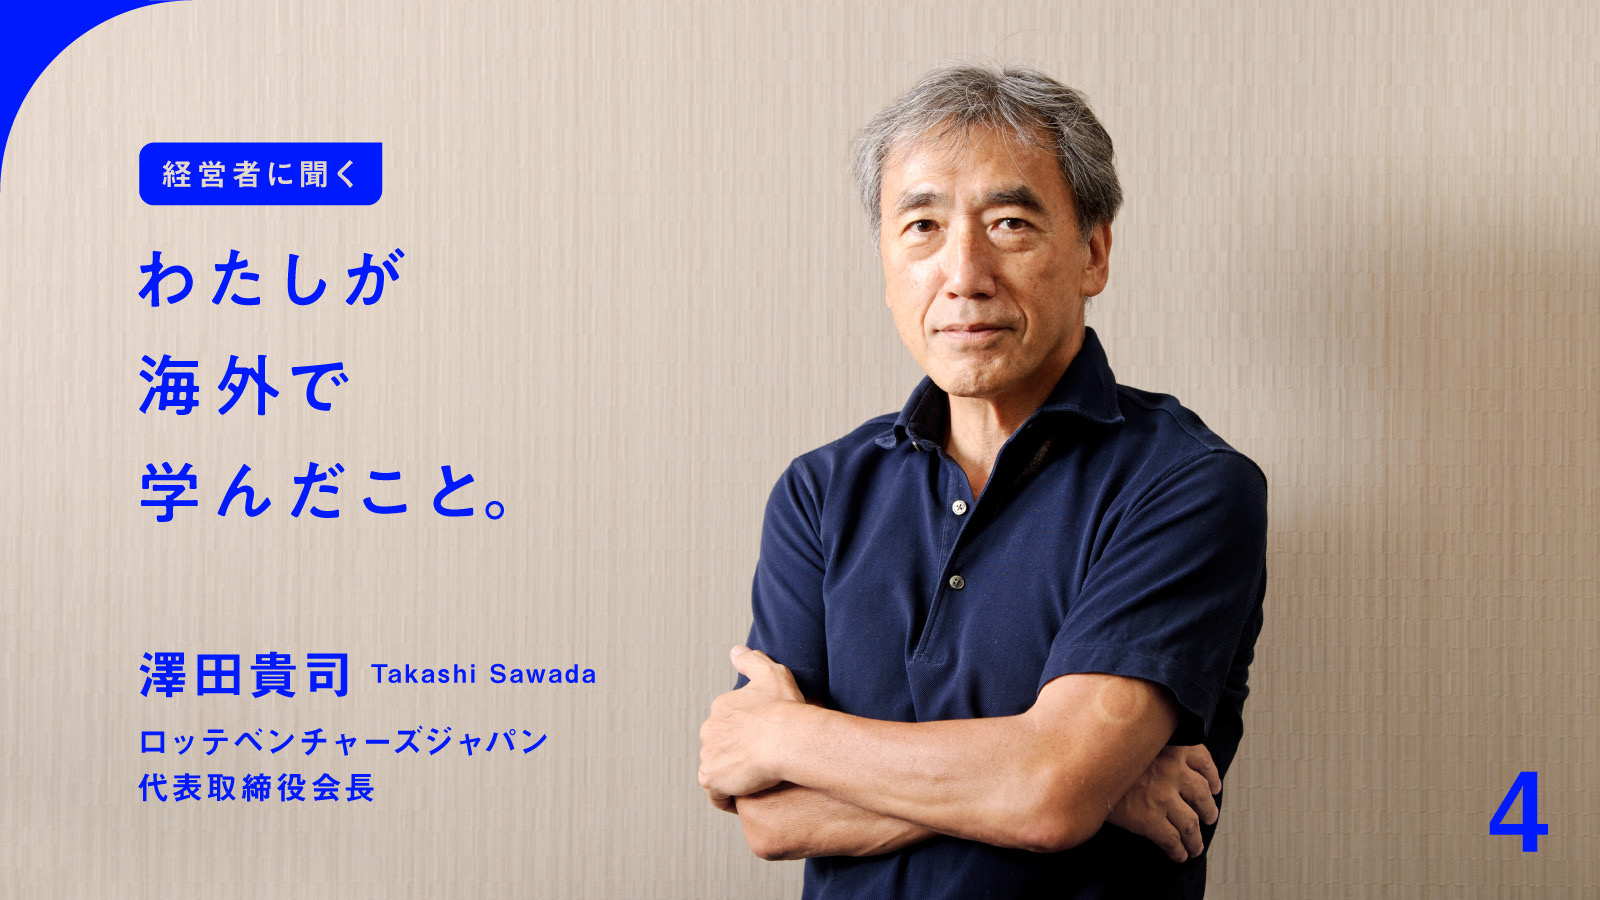 澤田貴司氏「海外では日本の基準を持ち込まない」 | 経営者に聞く「わたしが海外で学んだこと」